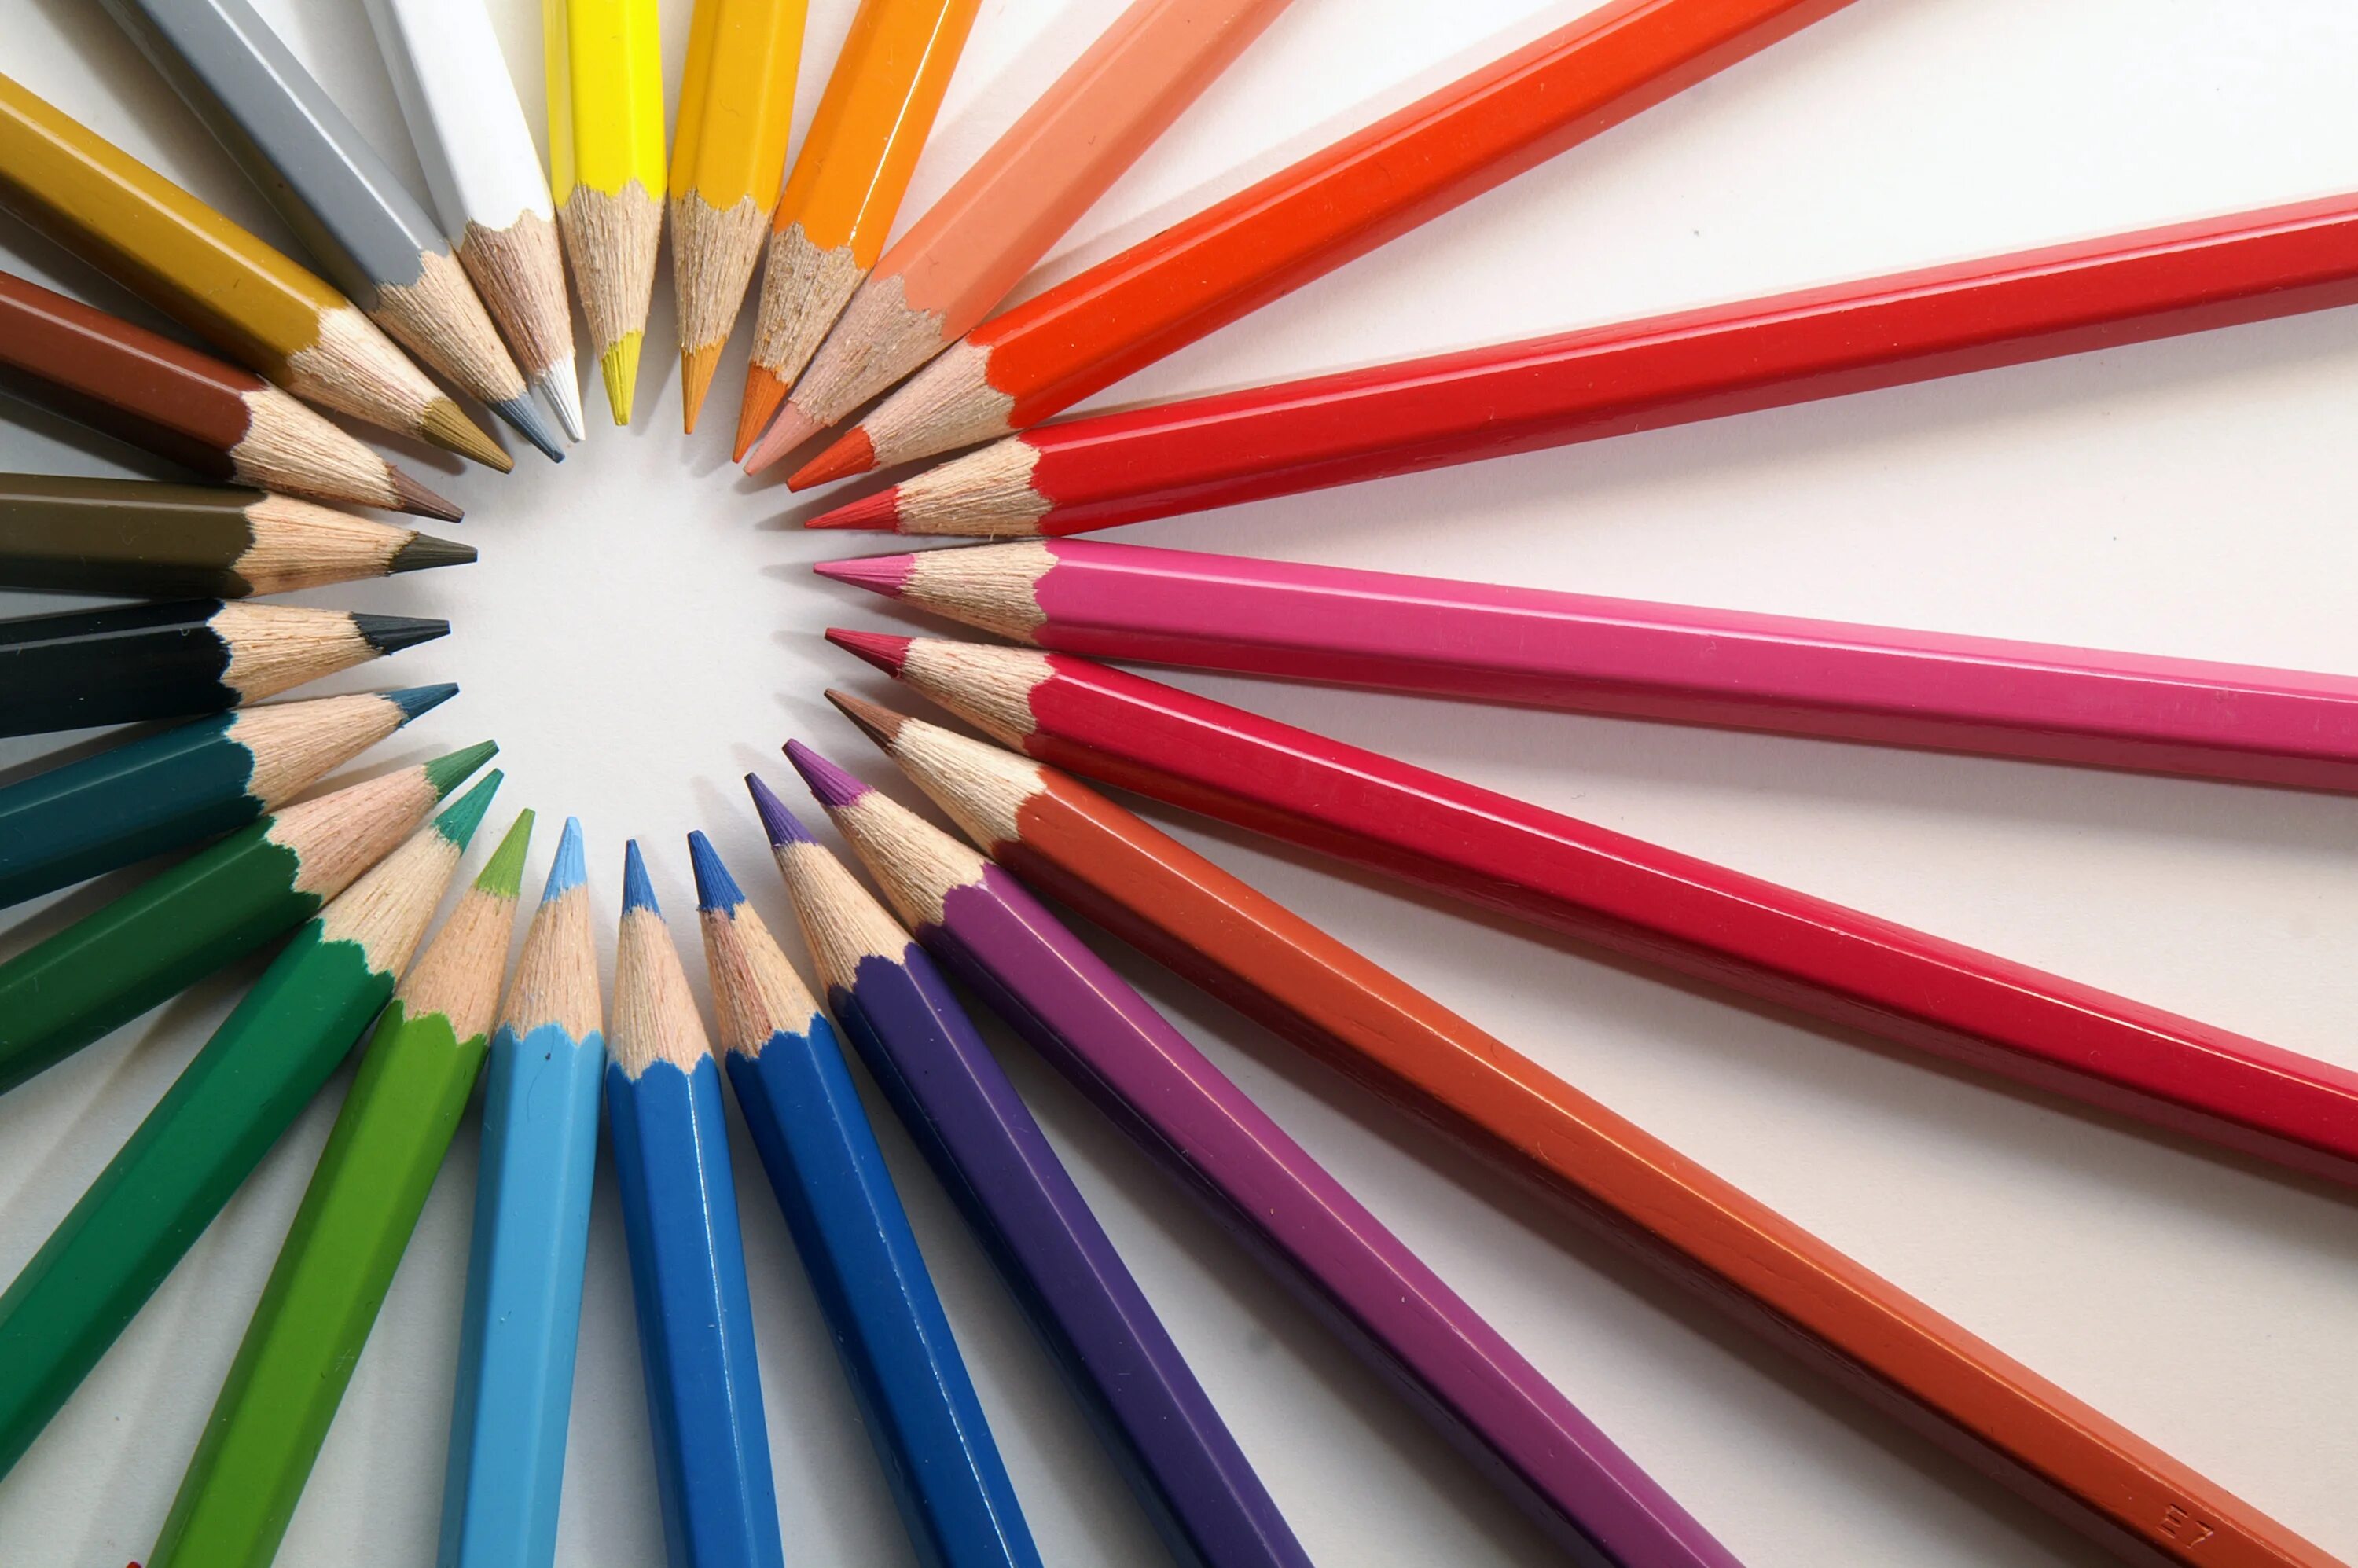 Названия цветов карандашей. Карандаши цветные. Яркие карандаши. Цветные карандаши и краски. Карандаши разного цвета.